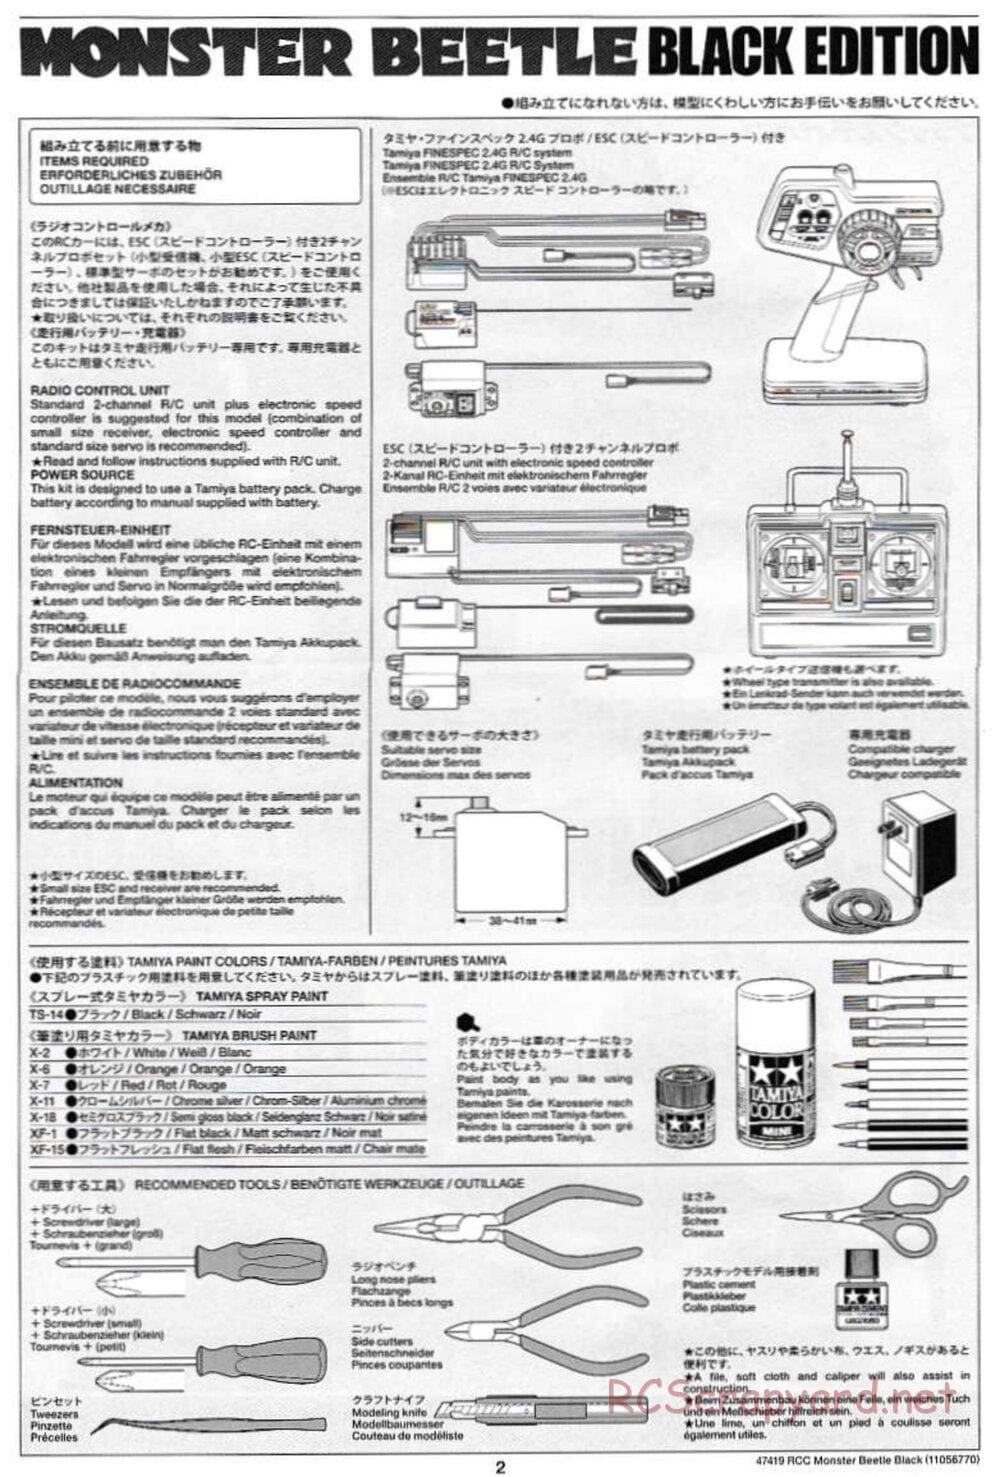 Tamiya - Monster Beetle Black Edition - ORV Chassis - Manual - Page 2